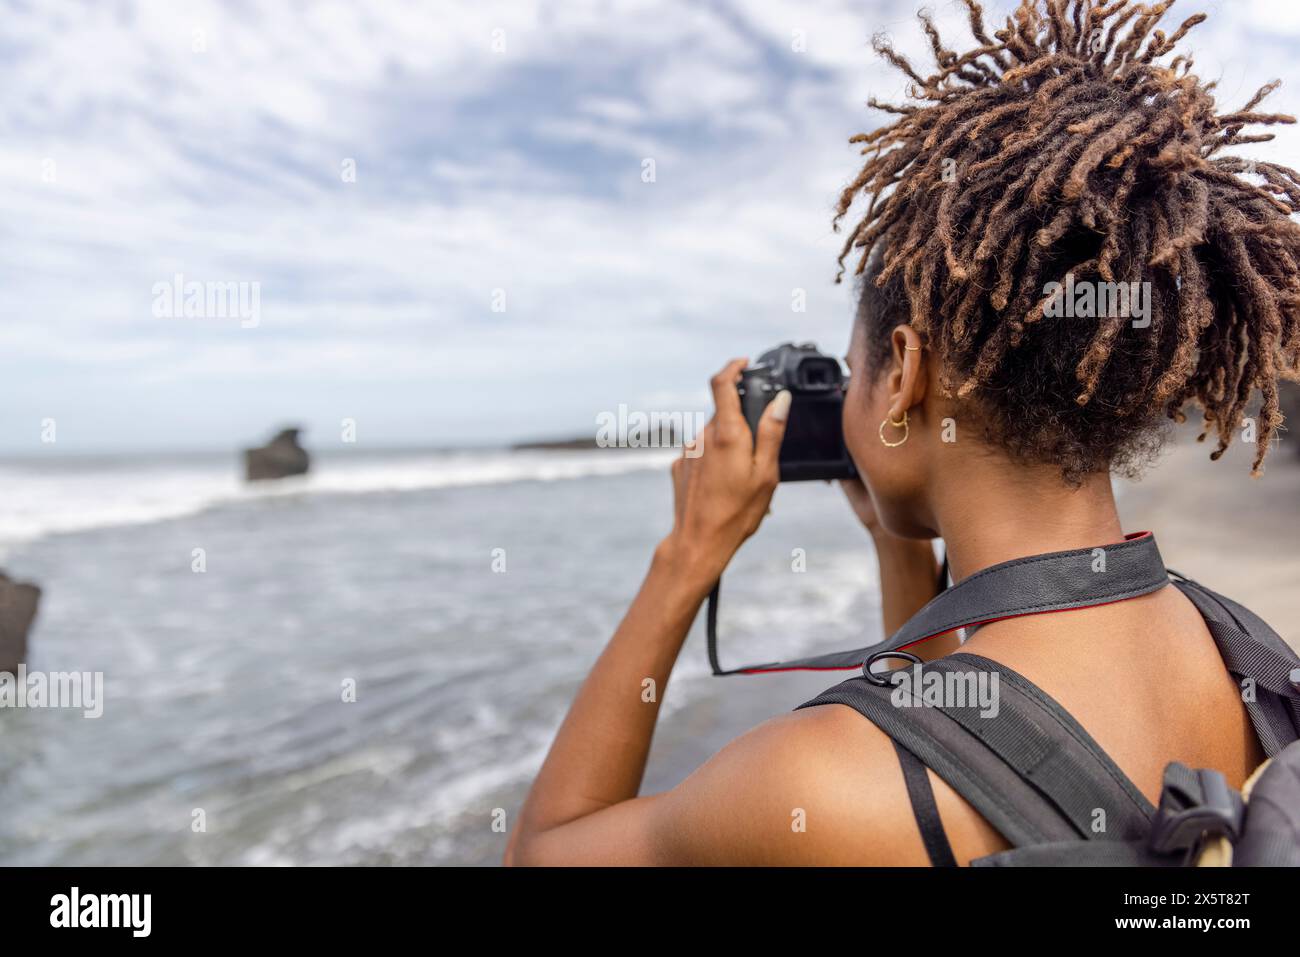 Indonesien, Bali, weibliche Touristen fotografieren Meerblick Stockfoto